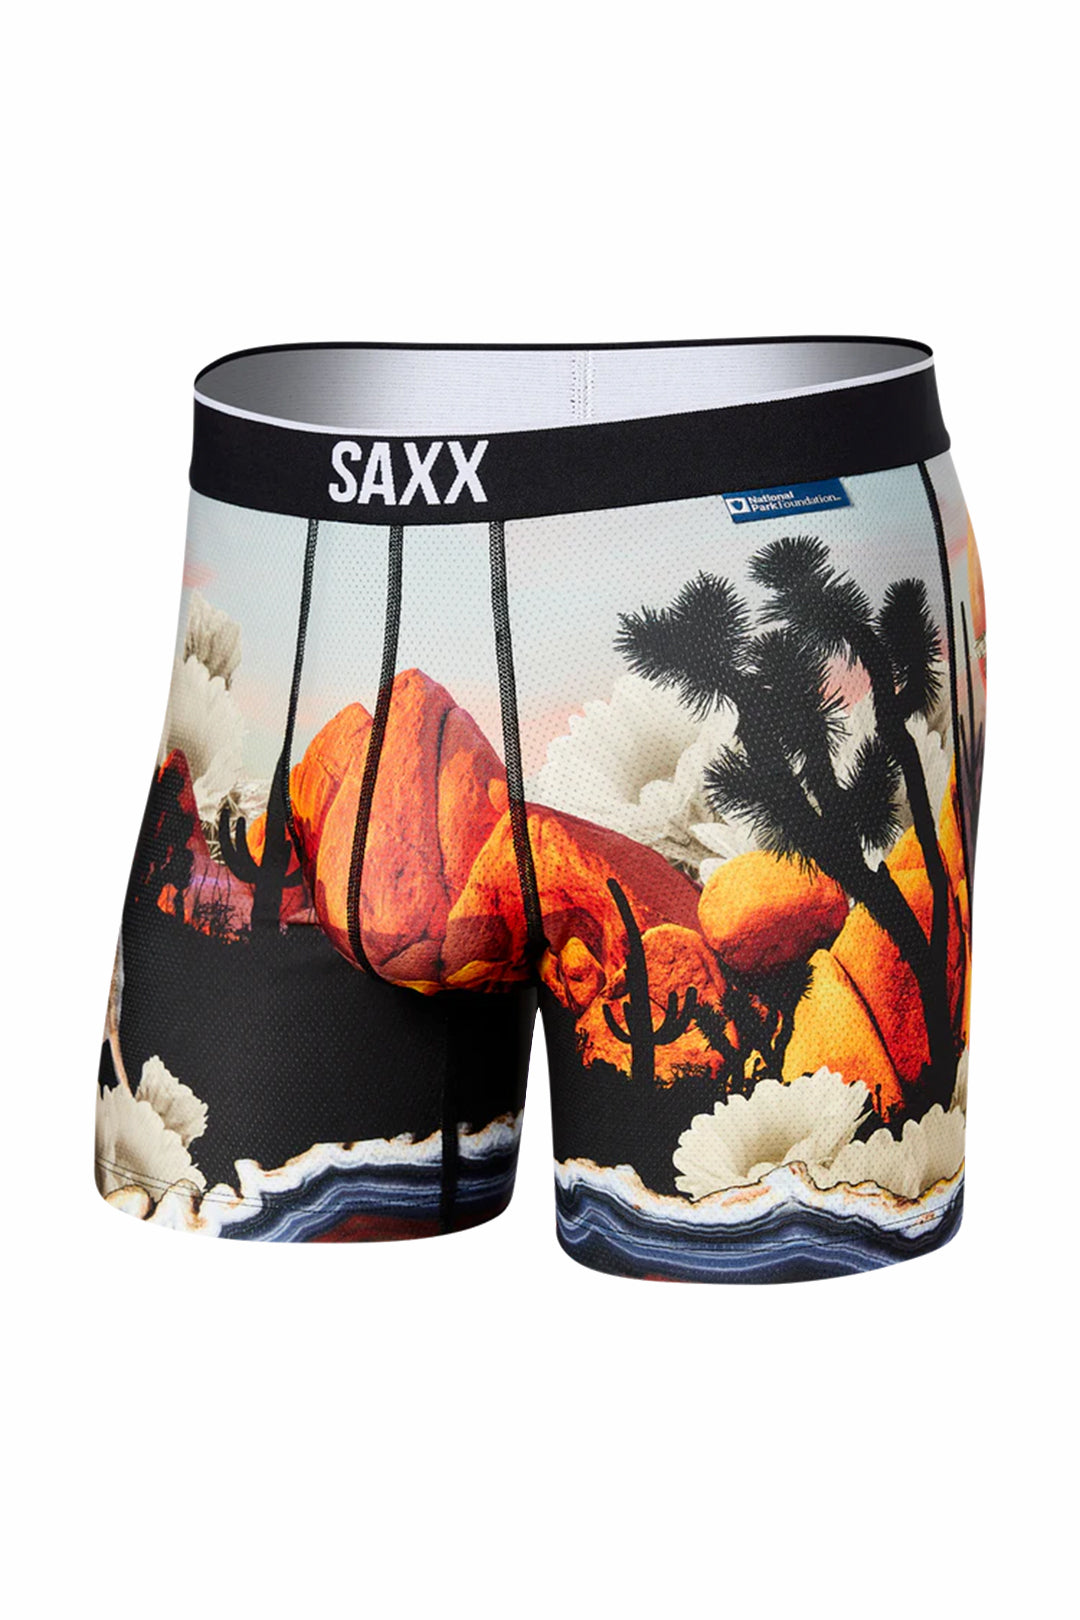 Arizona Saxx boxers in Multi color